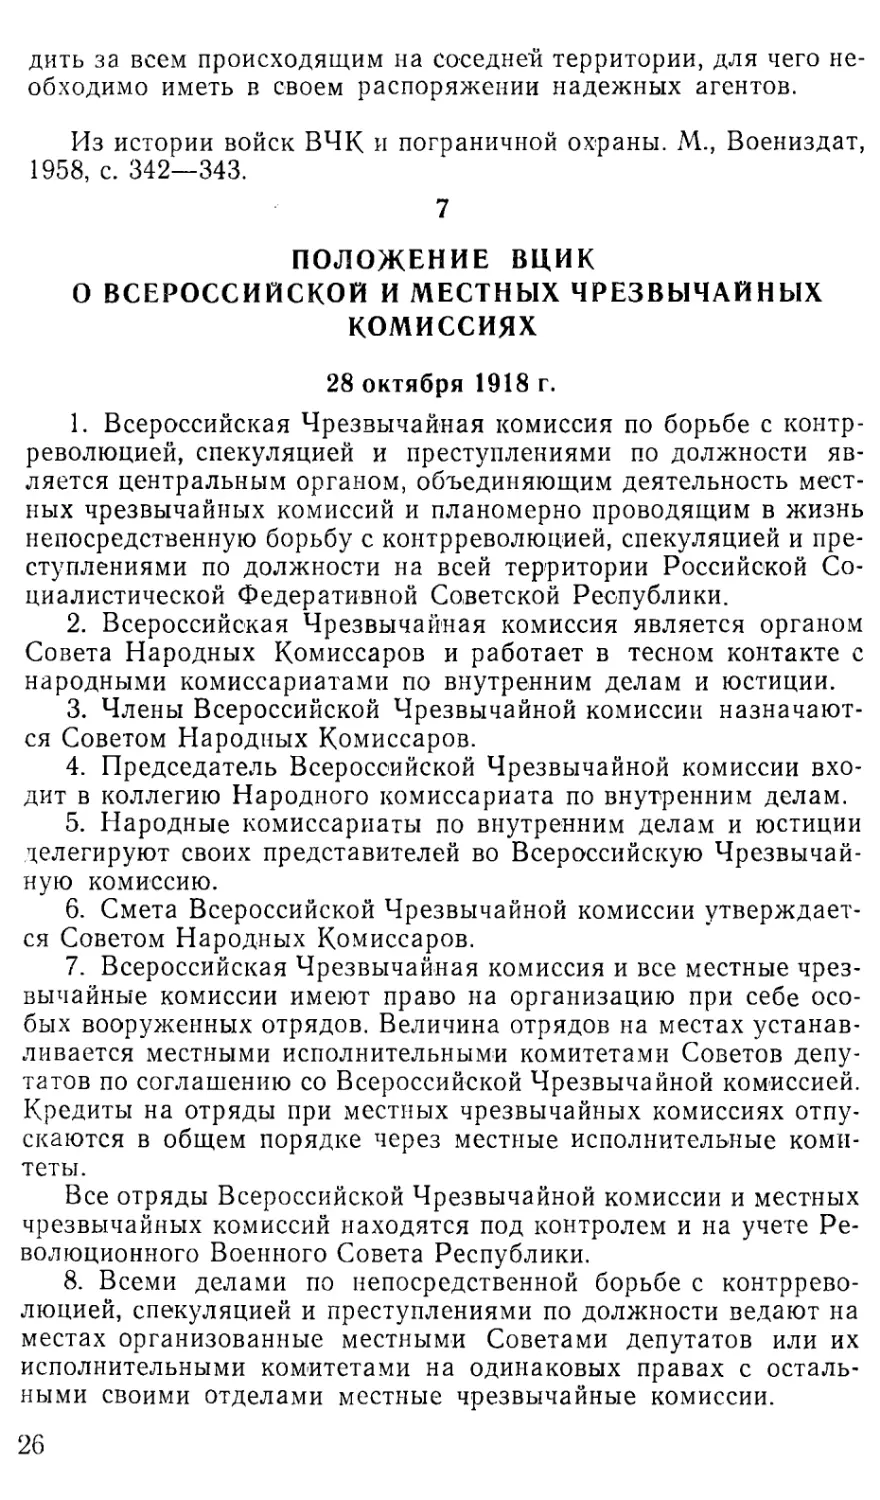 7. Положение ВЦИК о Всероссийской и местных чрезвычайных комиссиях. 28 октября 1918 г